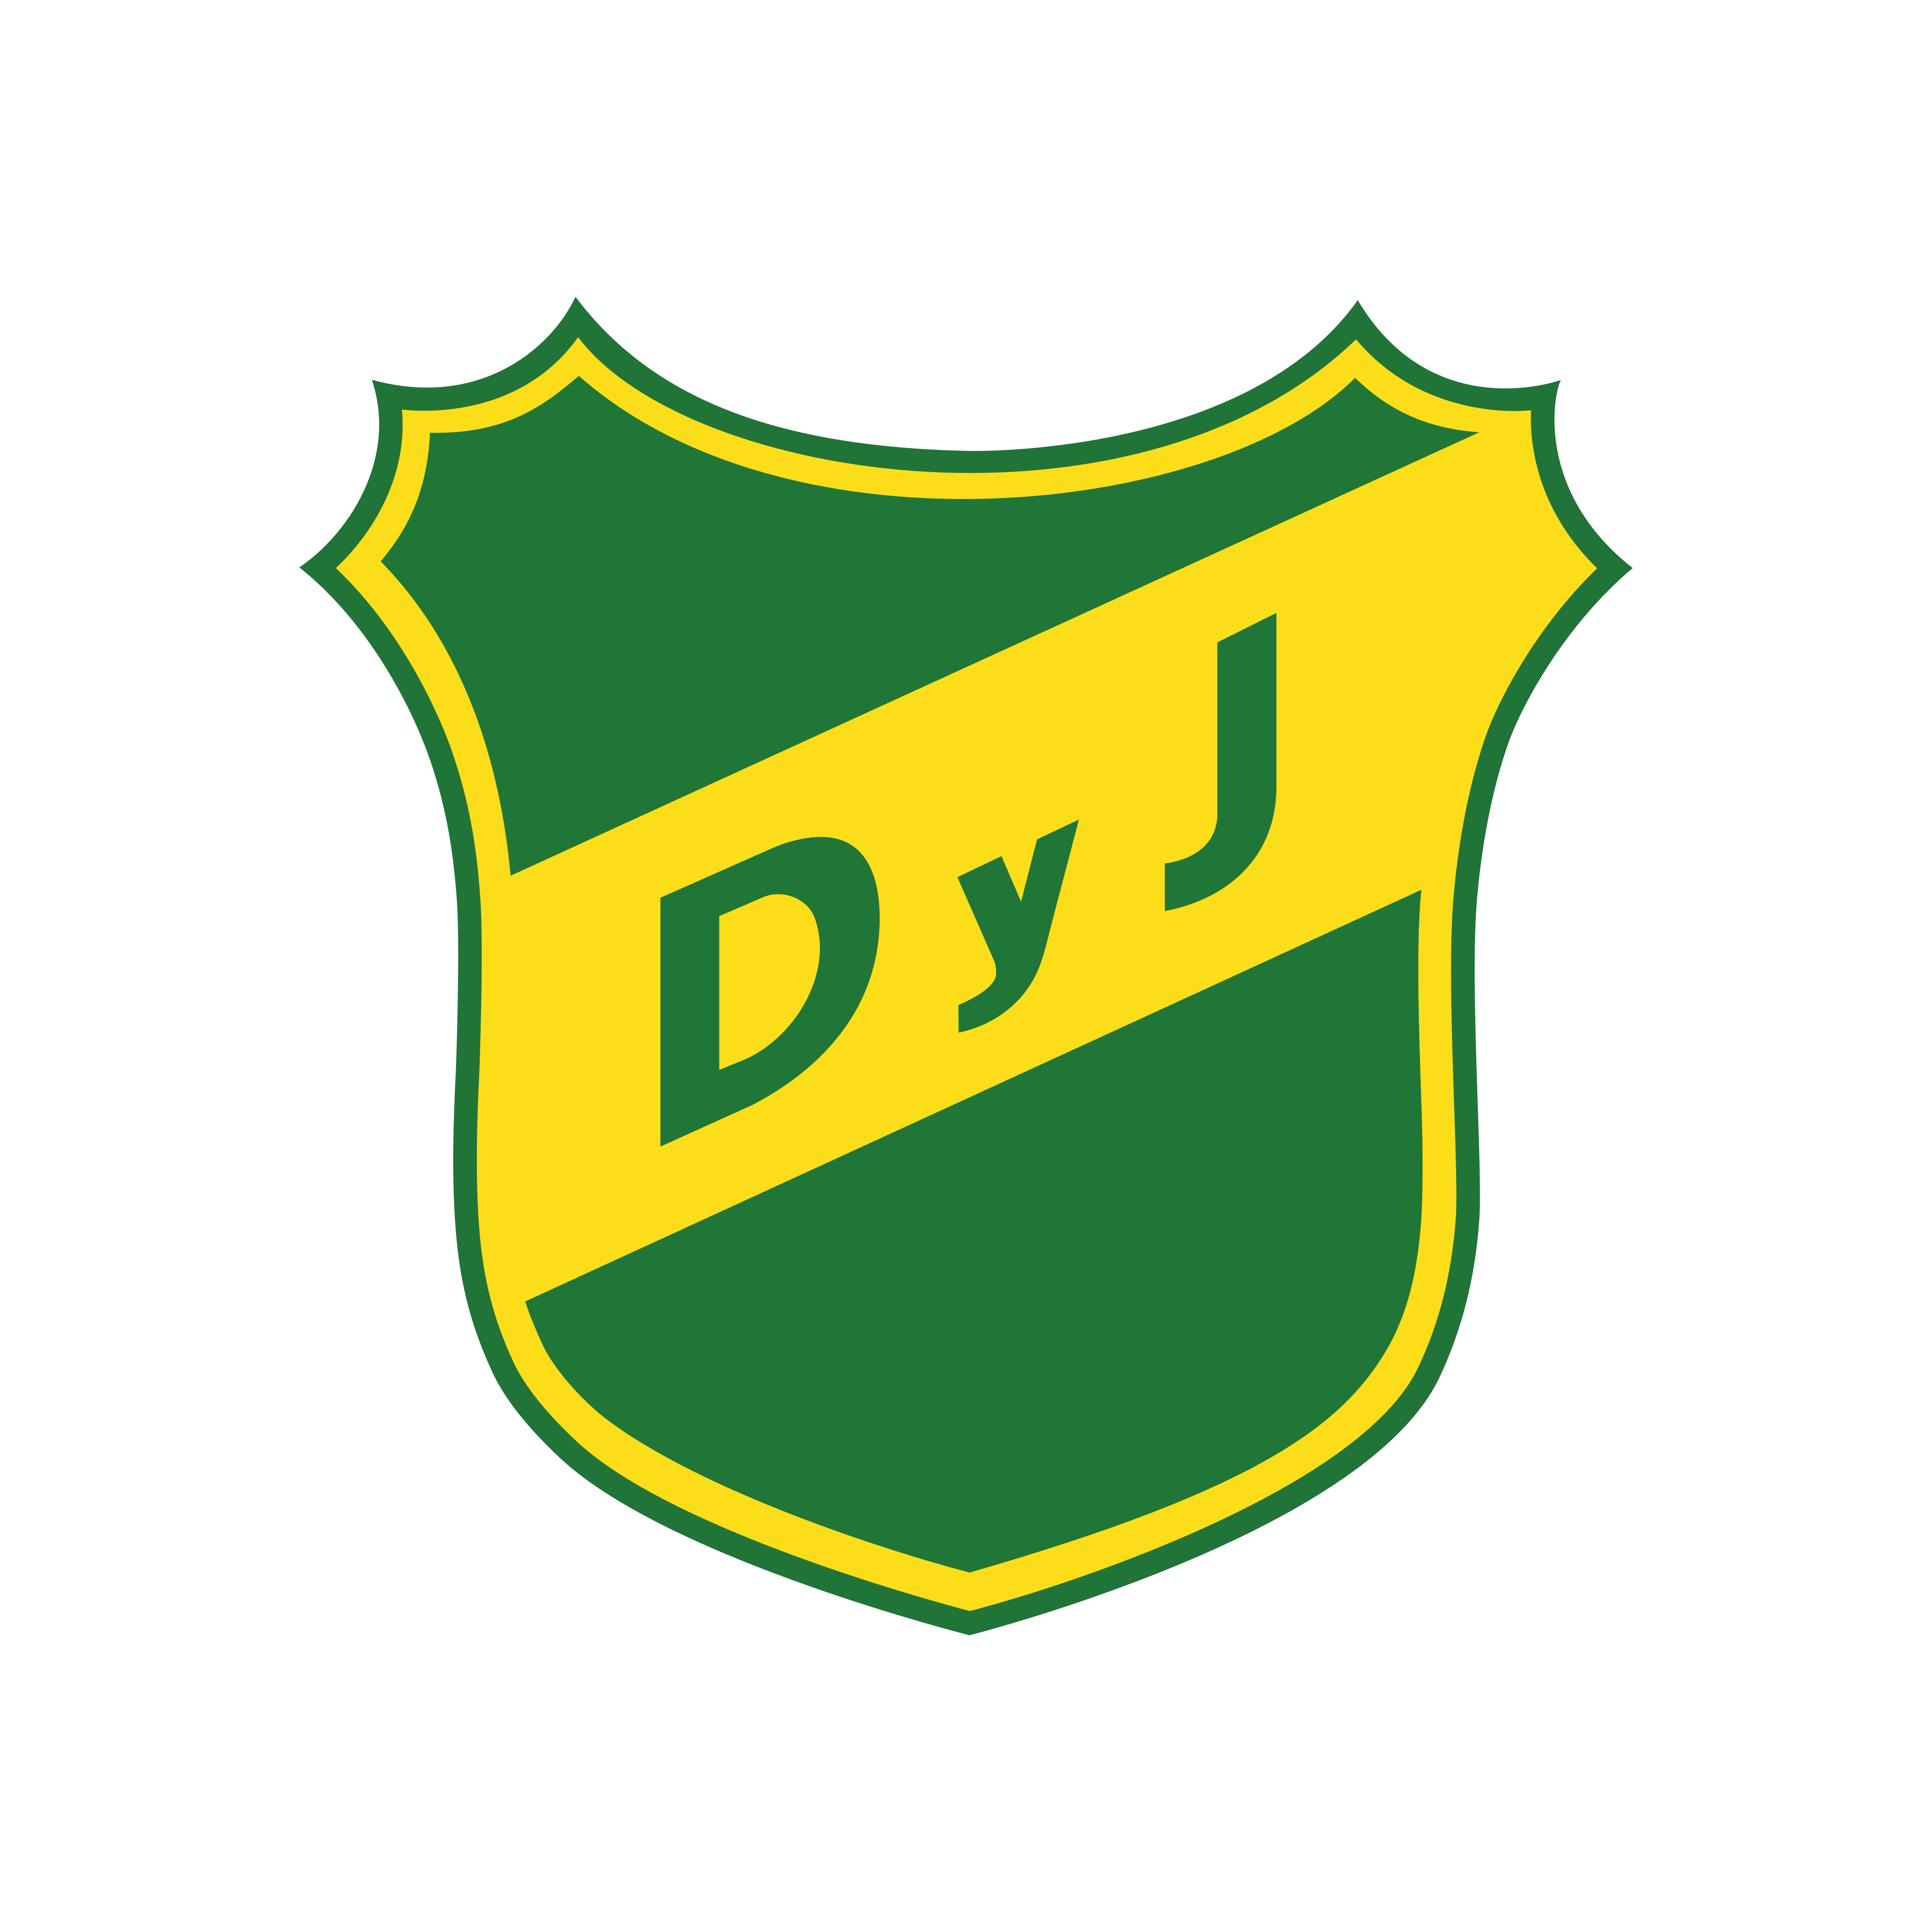 defensa y justicia logo 0 - Defensa y Justicia Logo